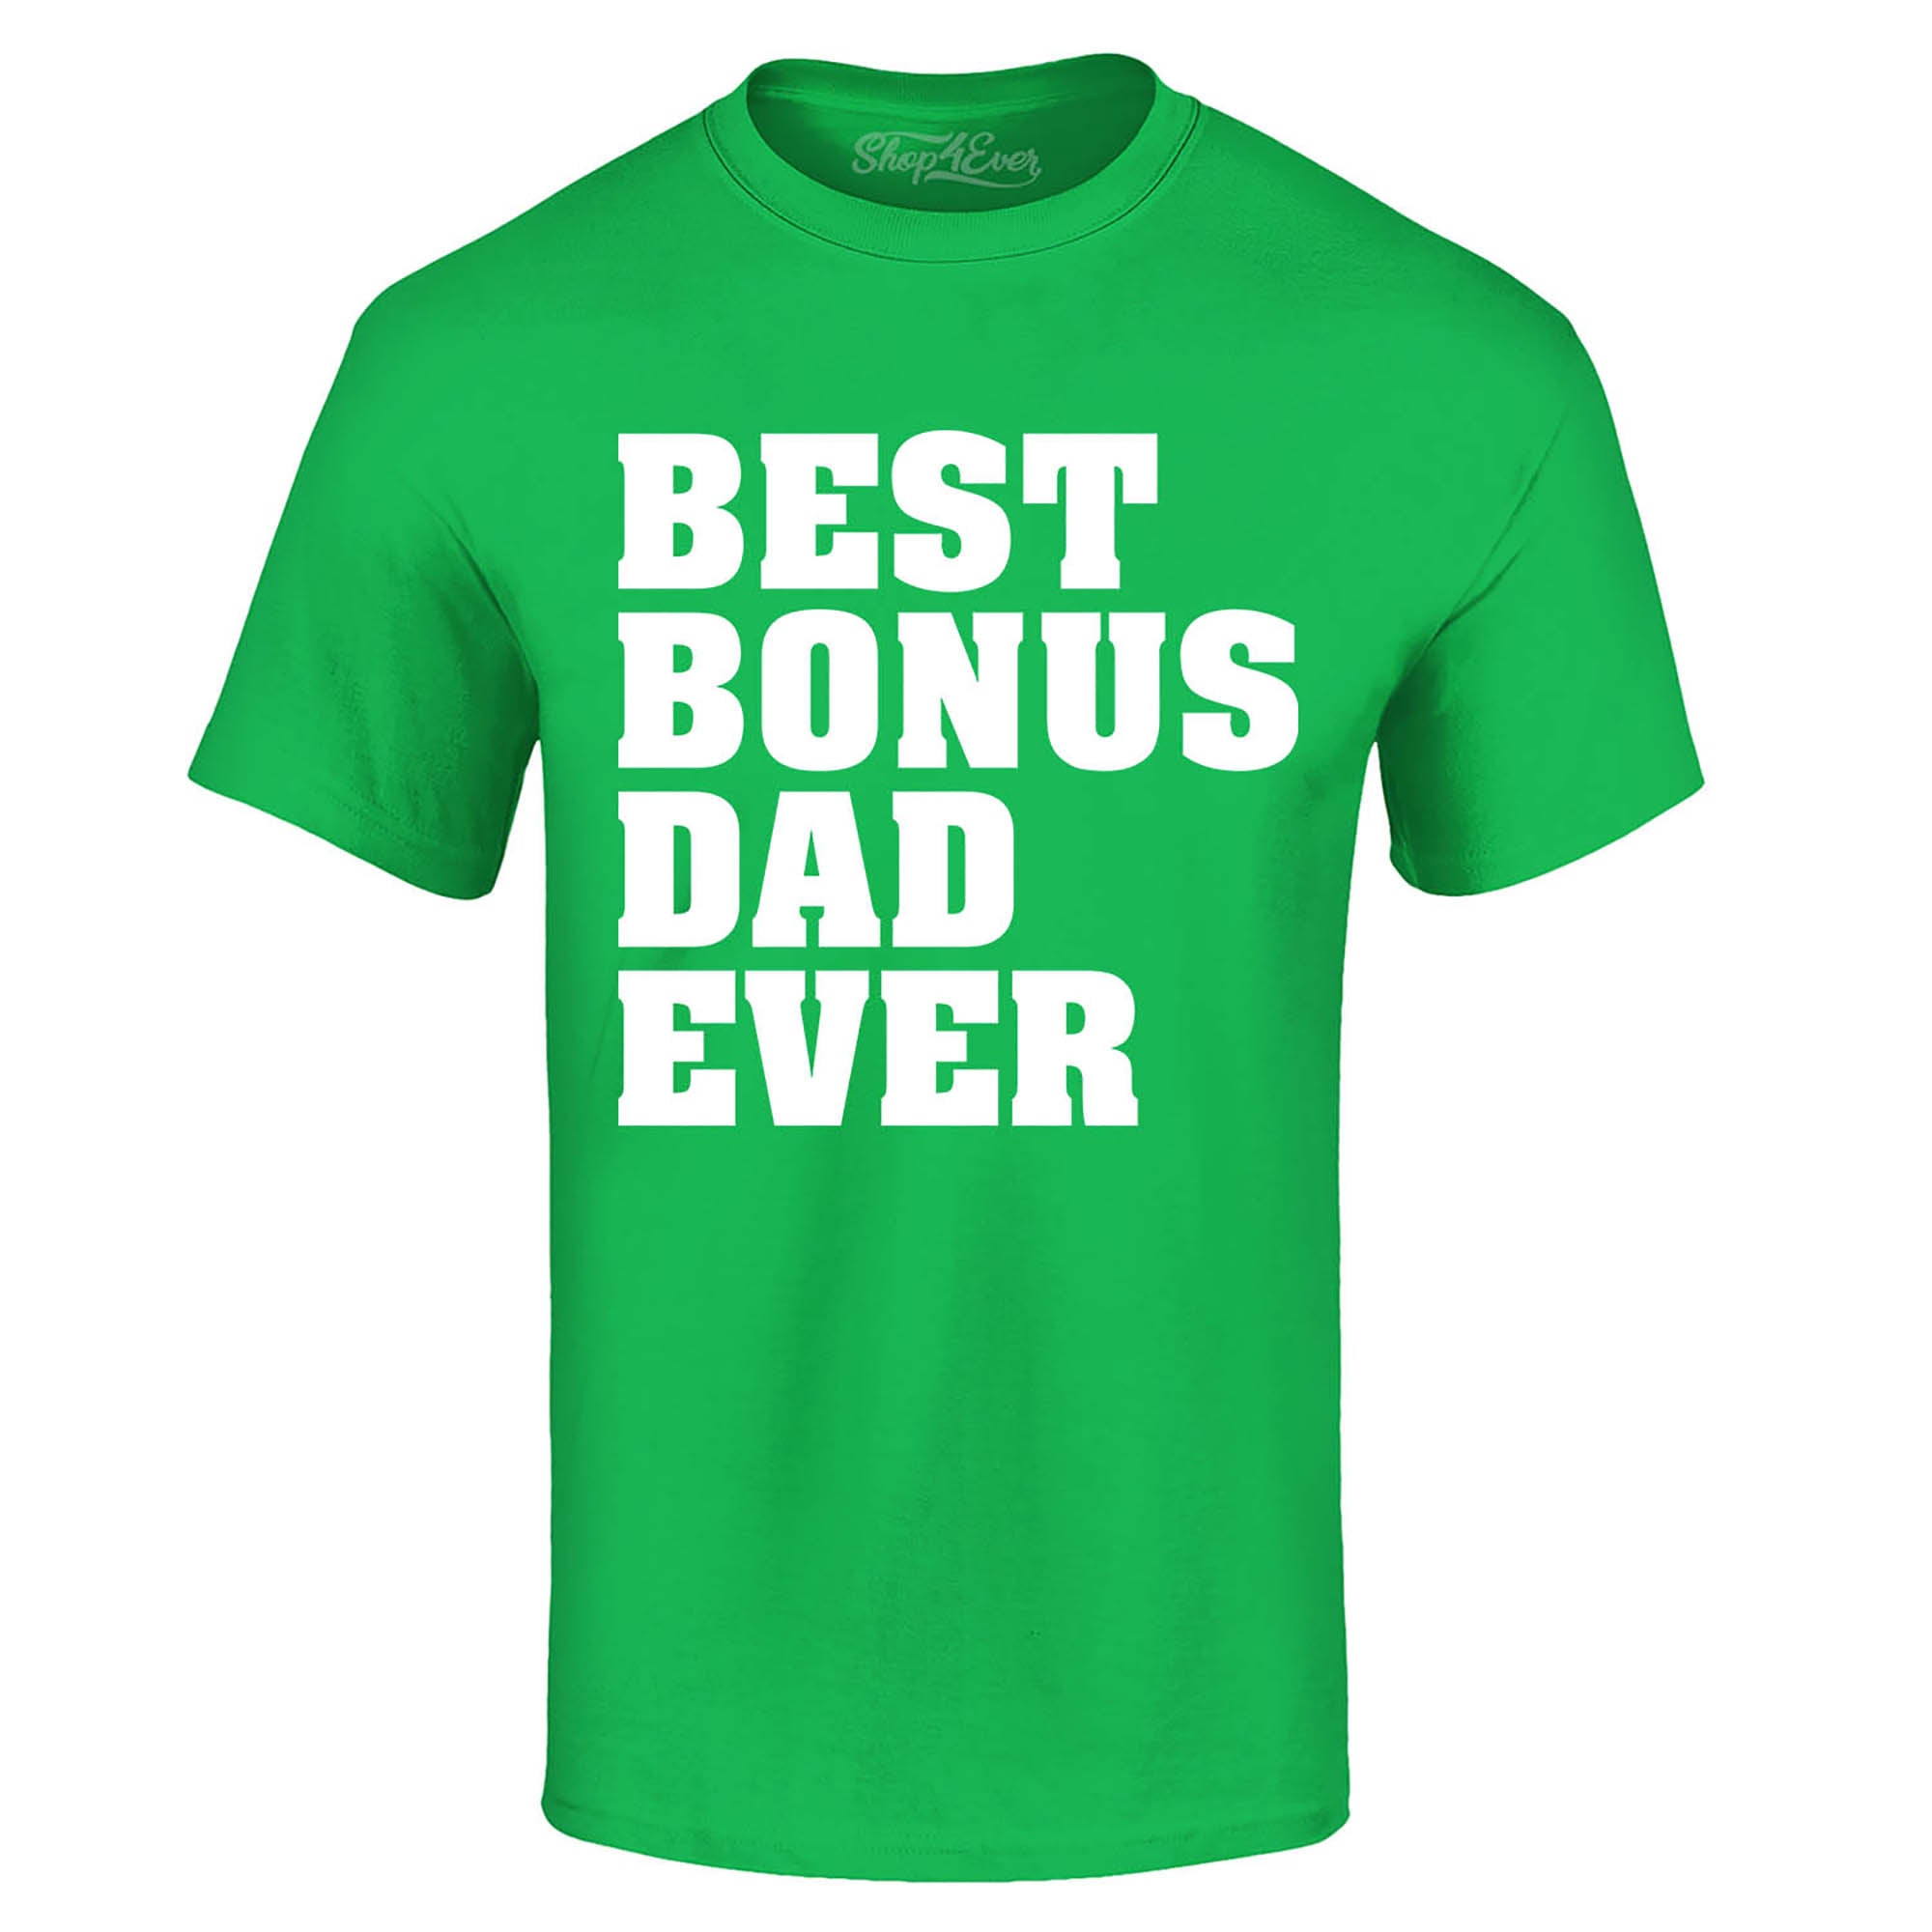 Best Bonus Dad Ever T-Shirt